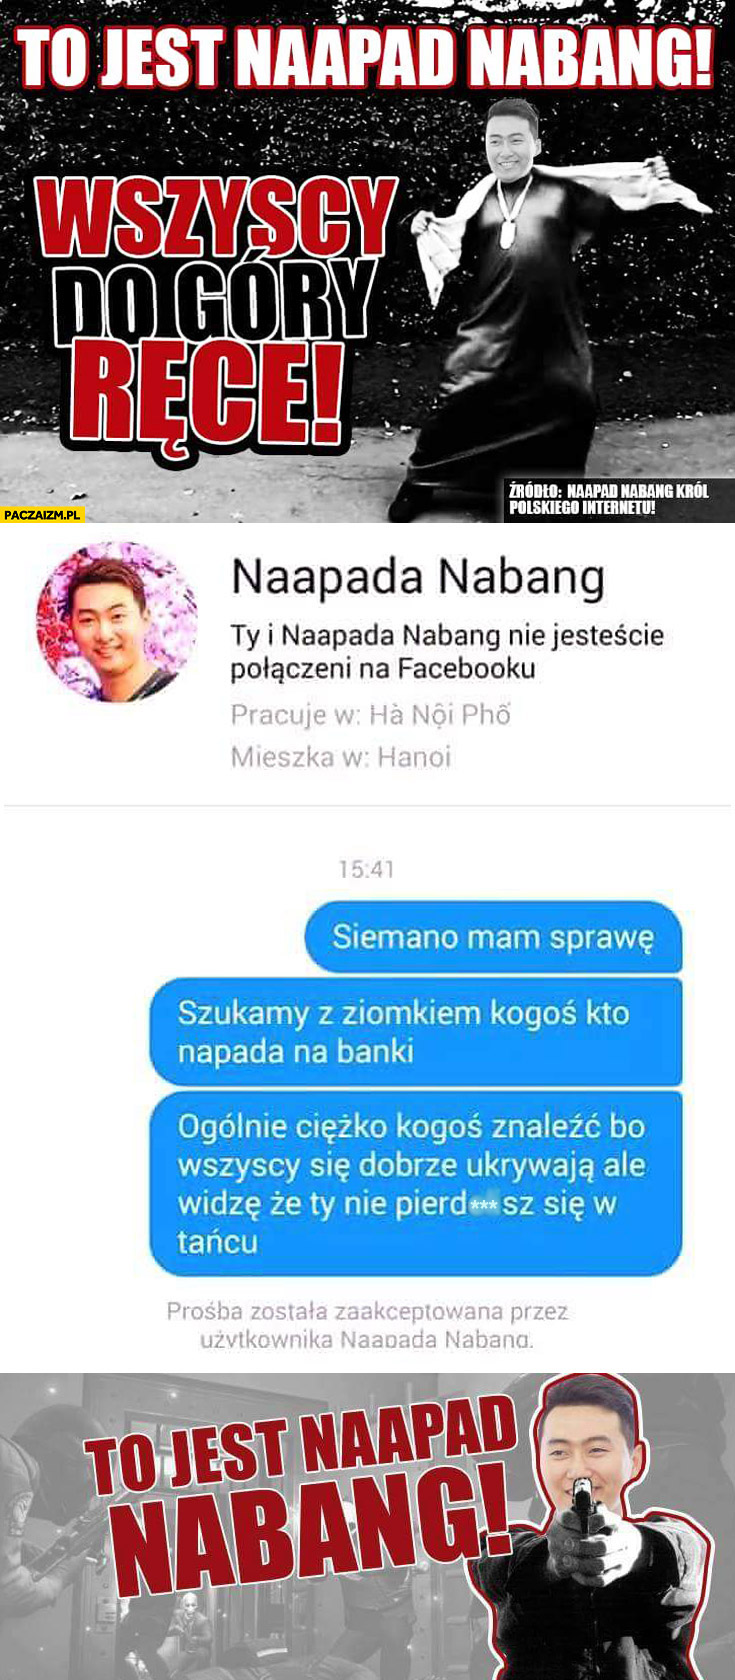 To jest Napaad Nabang imię i nazwisko gościa na facebooku